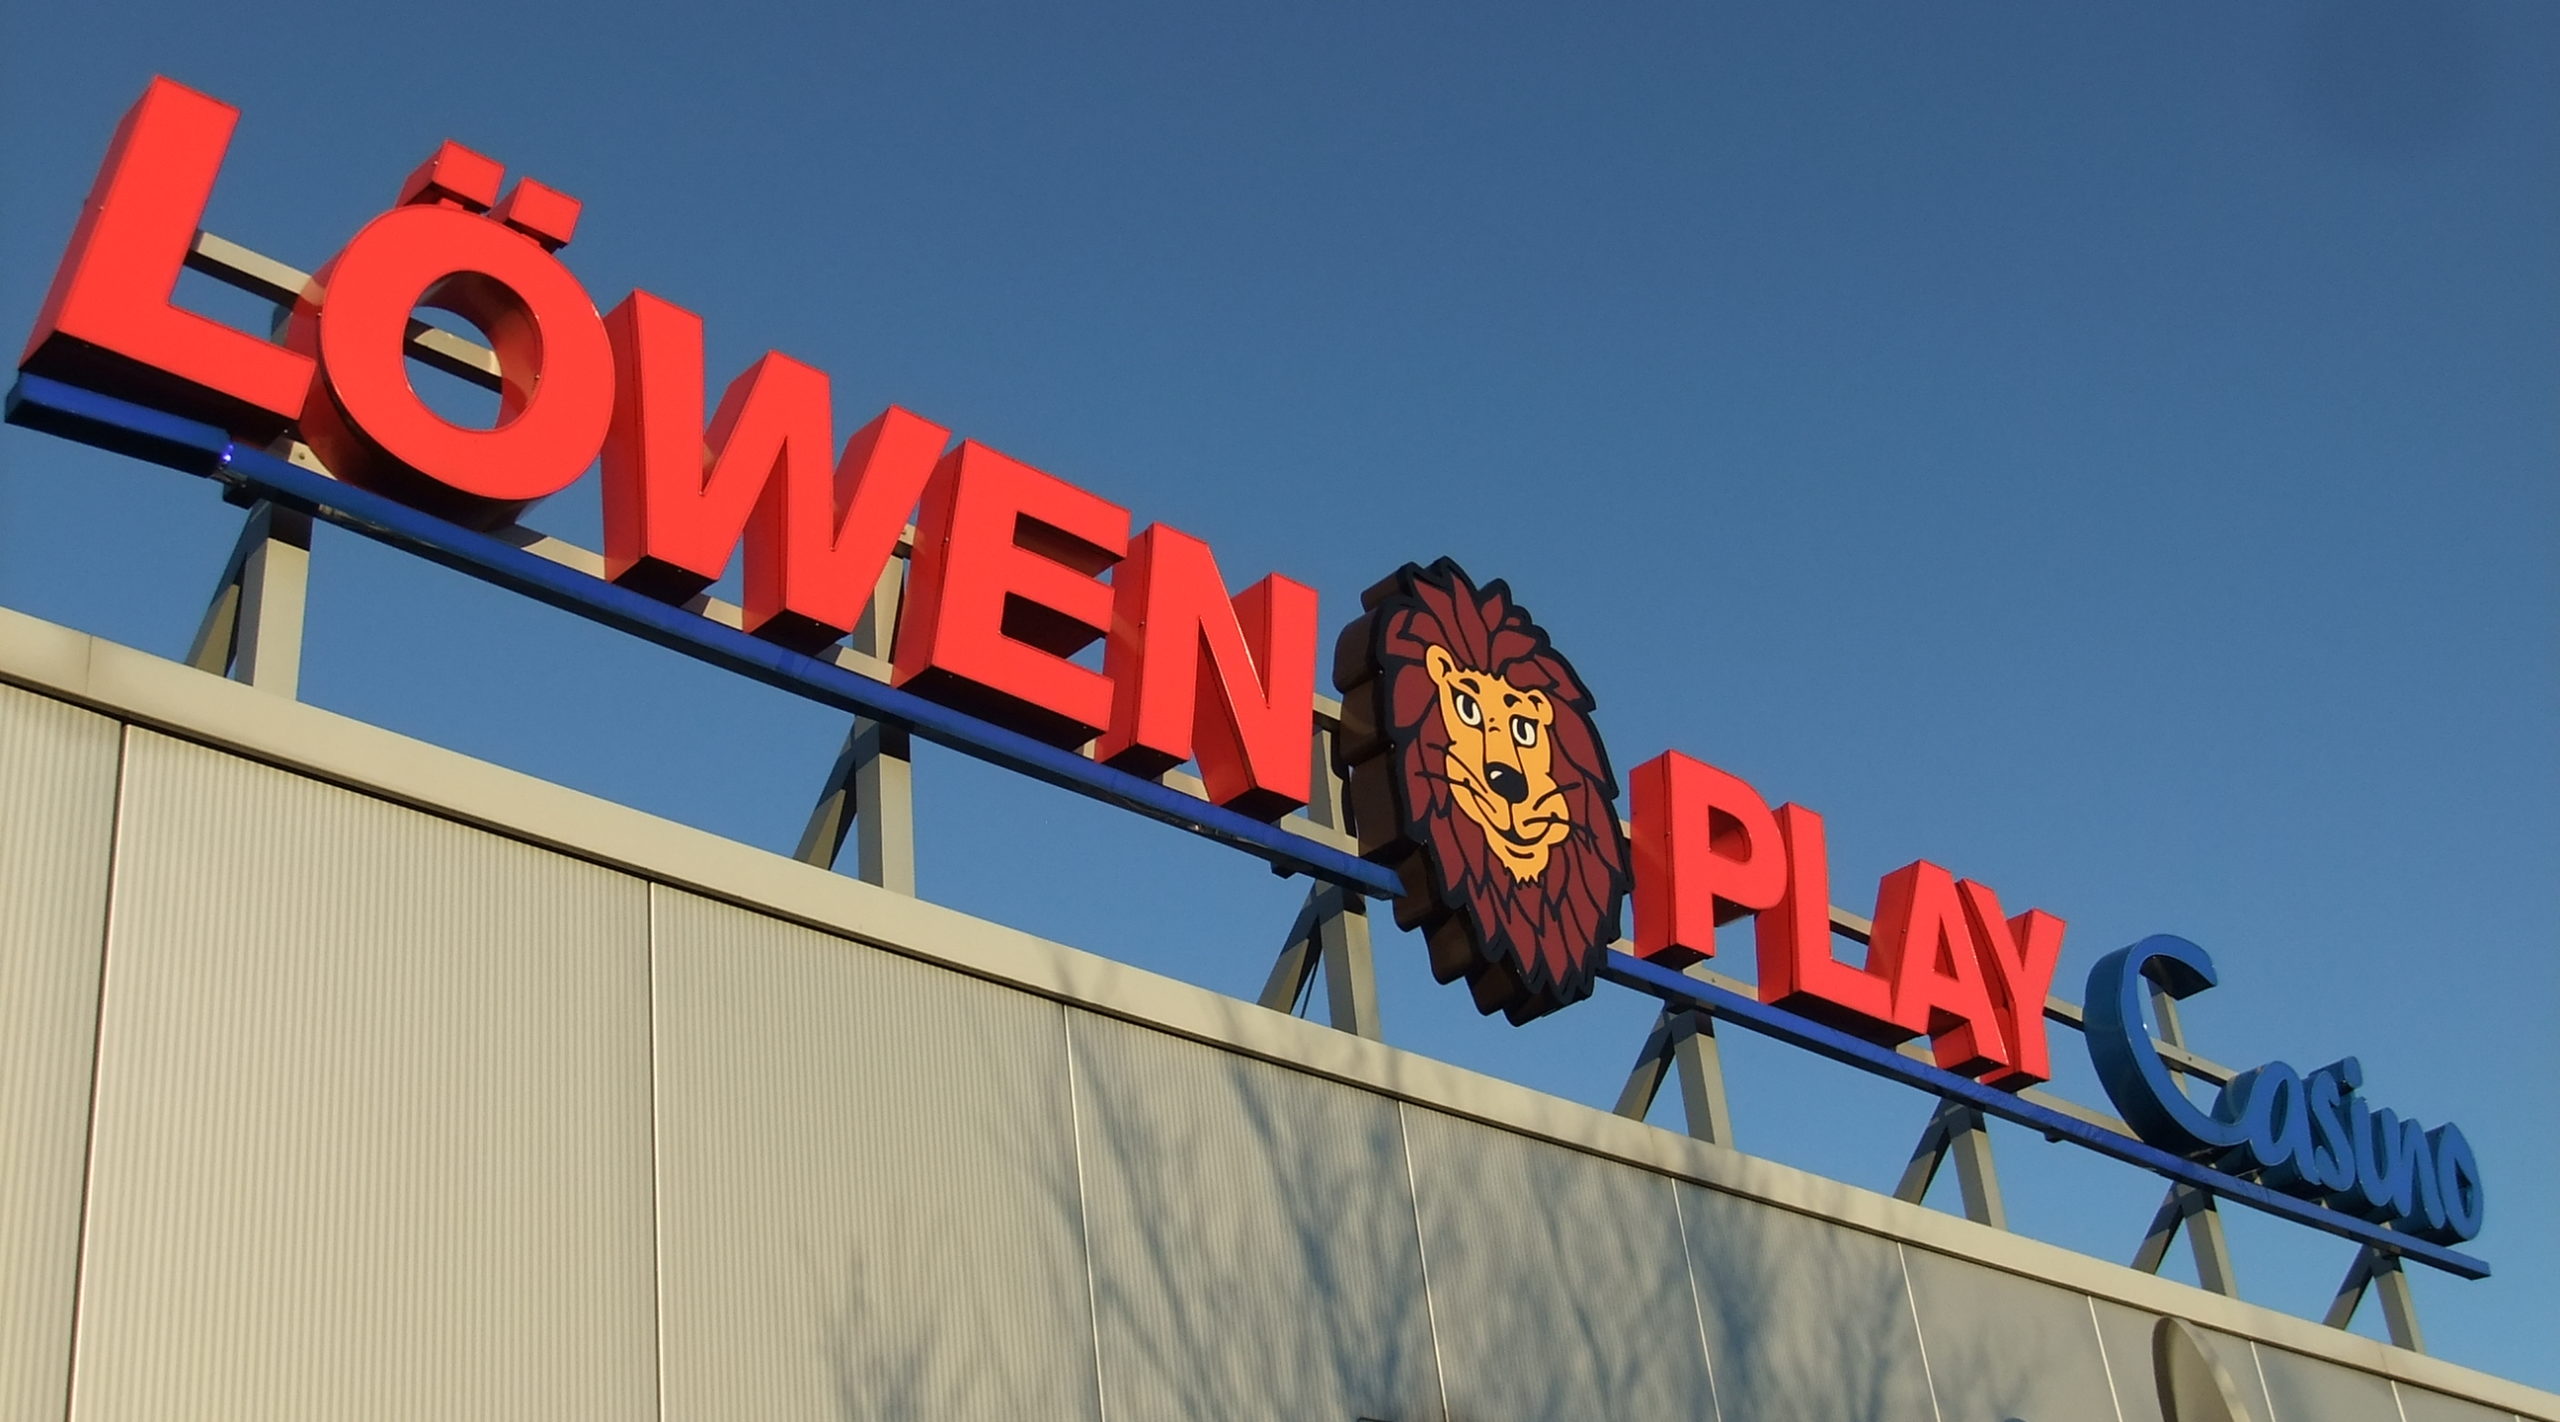 Löwen Play Casino – Öffnungszeiten & Adressen